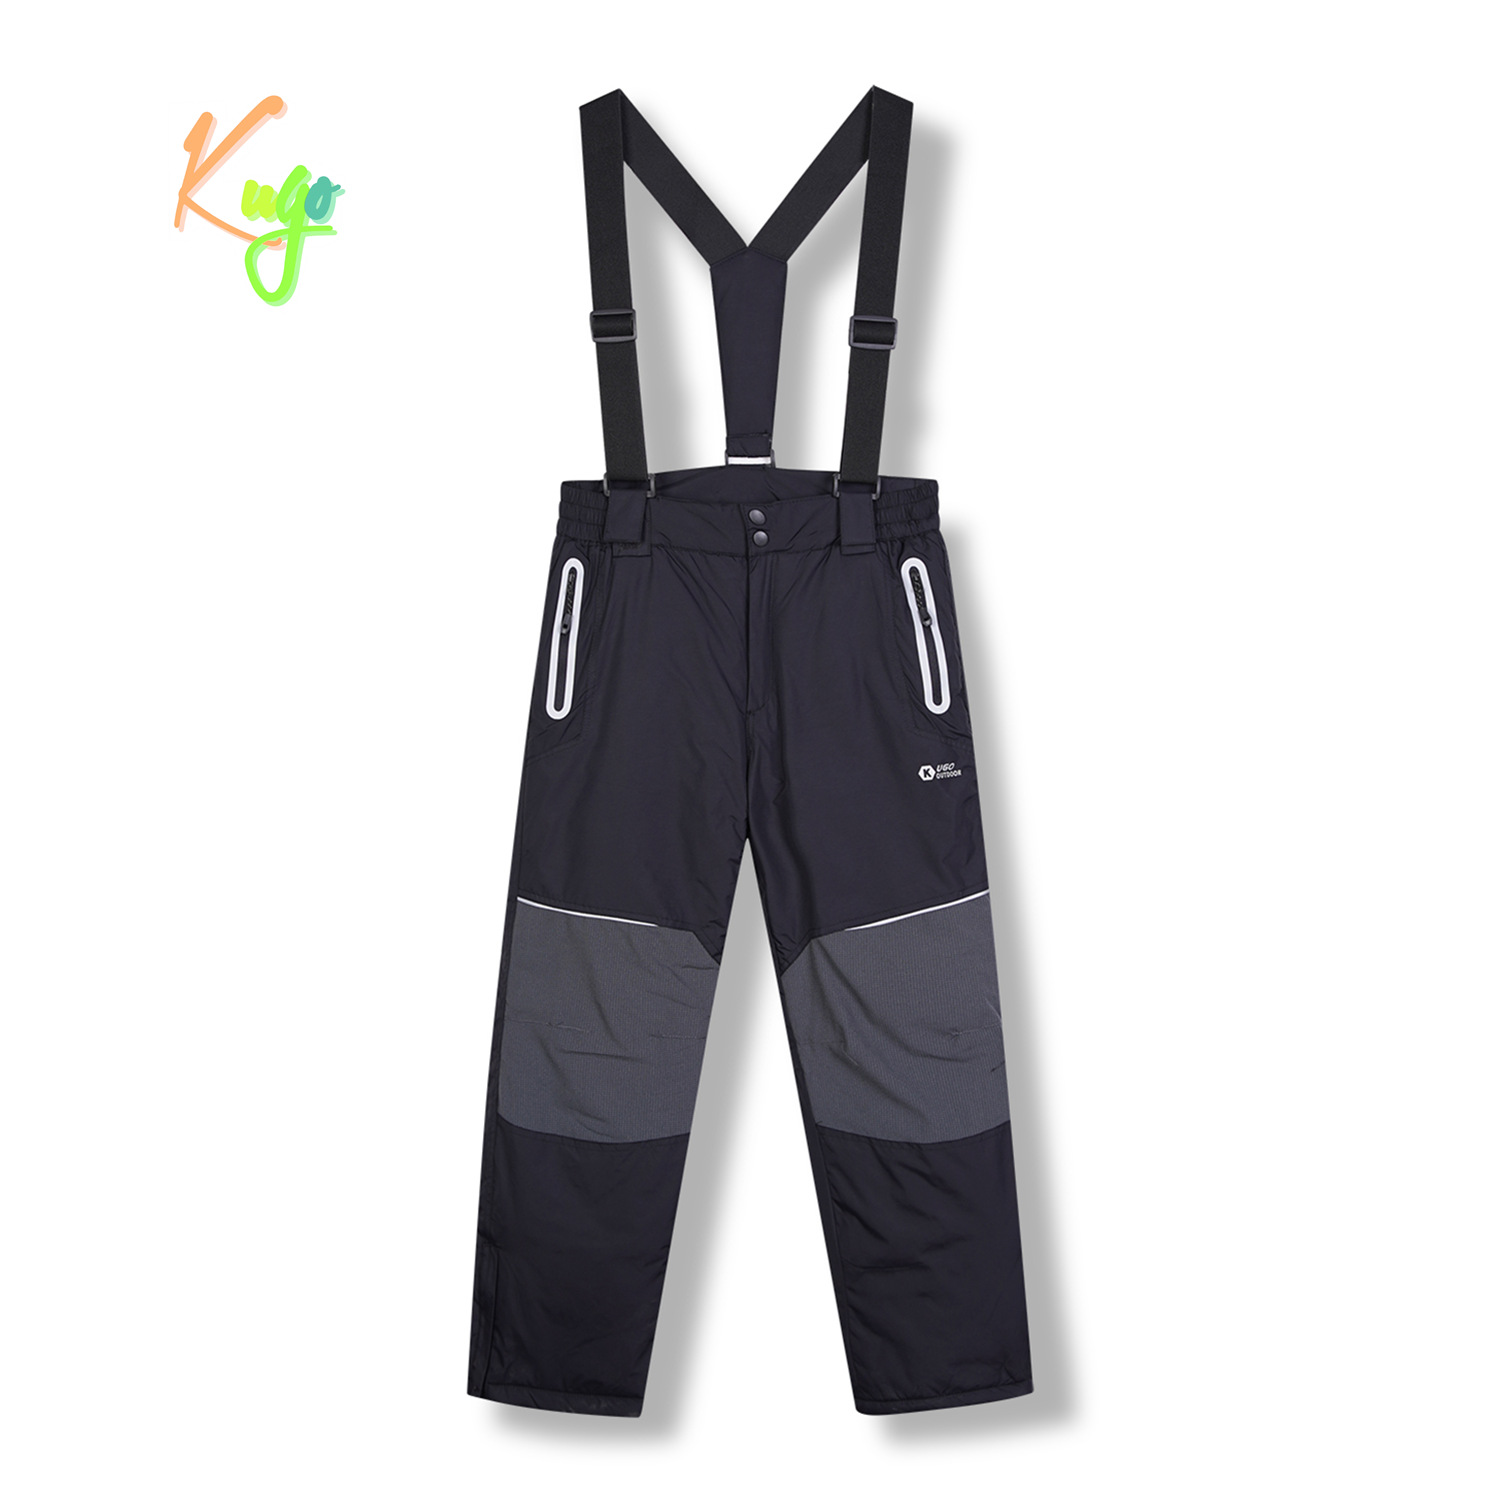 Chlapecké lyžařské kalhoty - KUGO DK8231, černá / černé zipy Barva: Černá, Velikost: 158